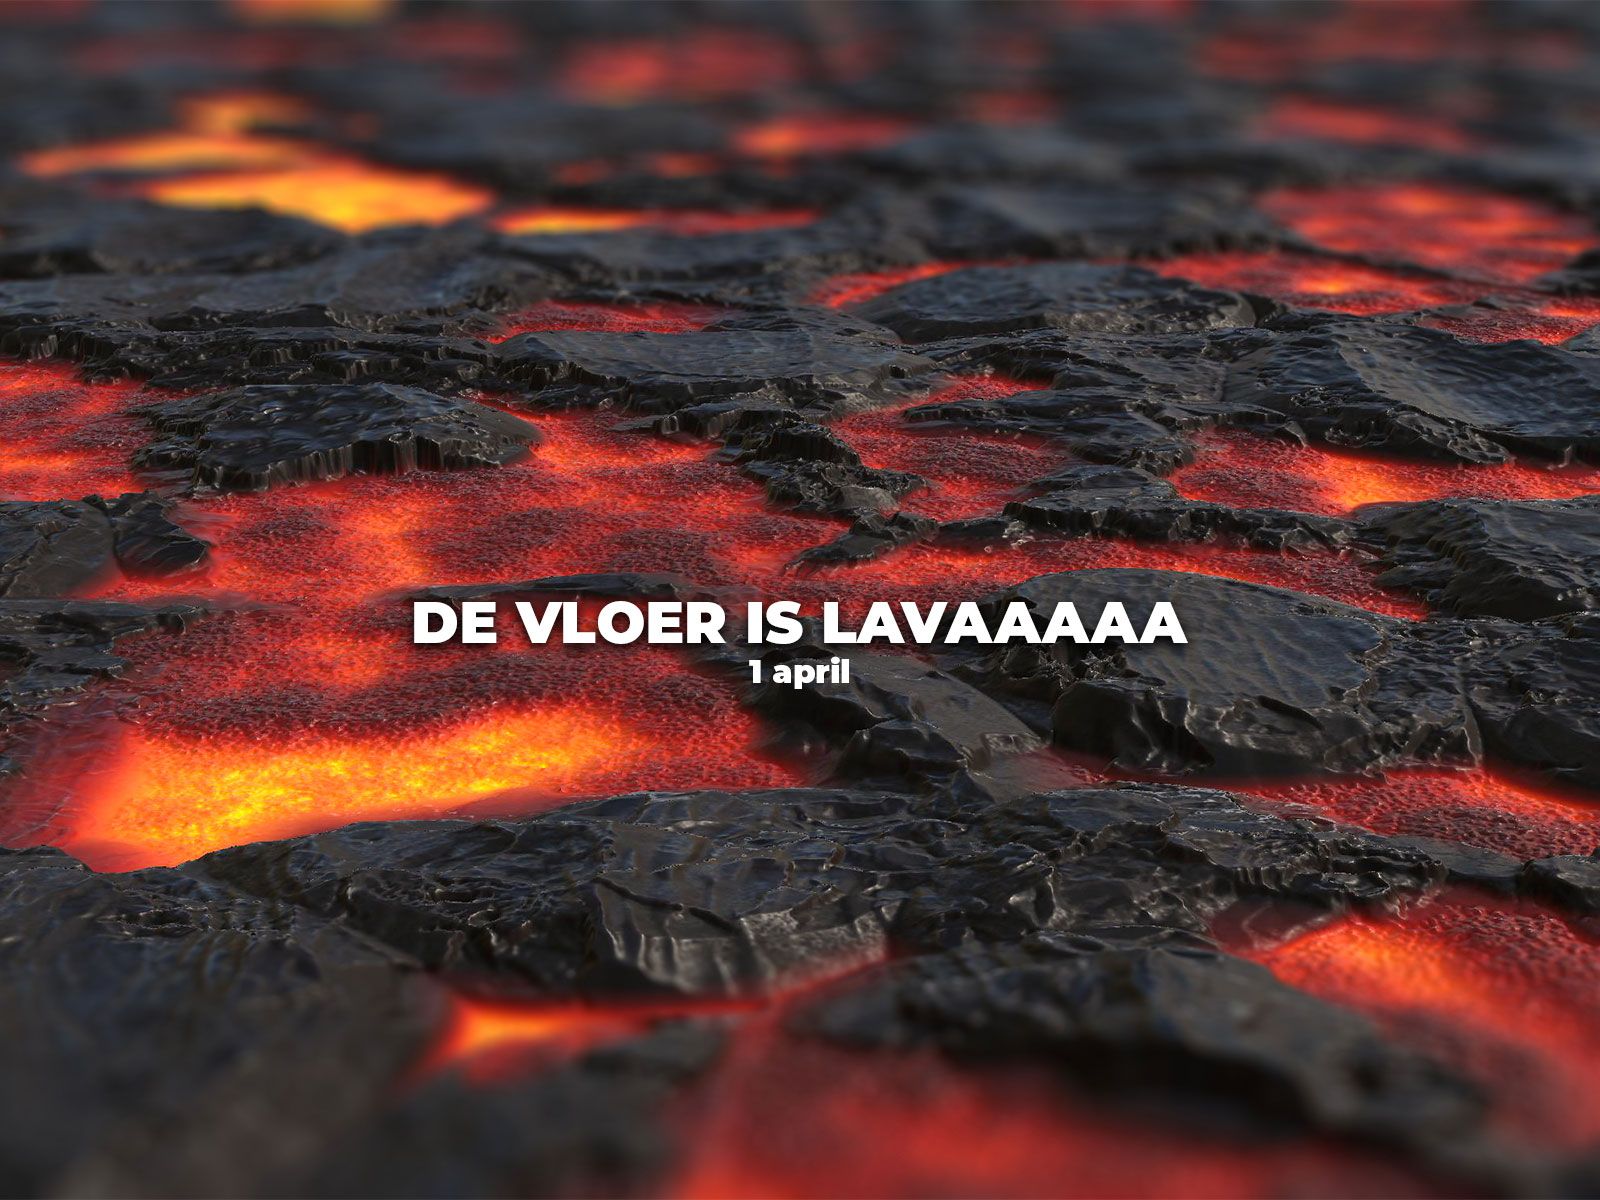 De vloer is lava 1 april grap 2022